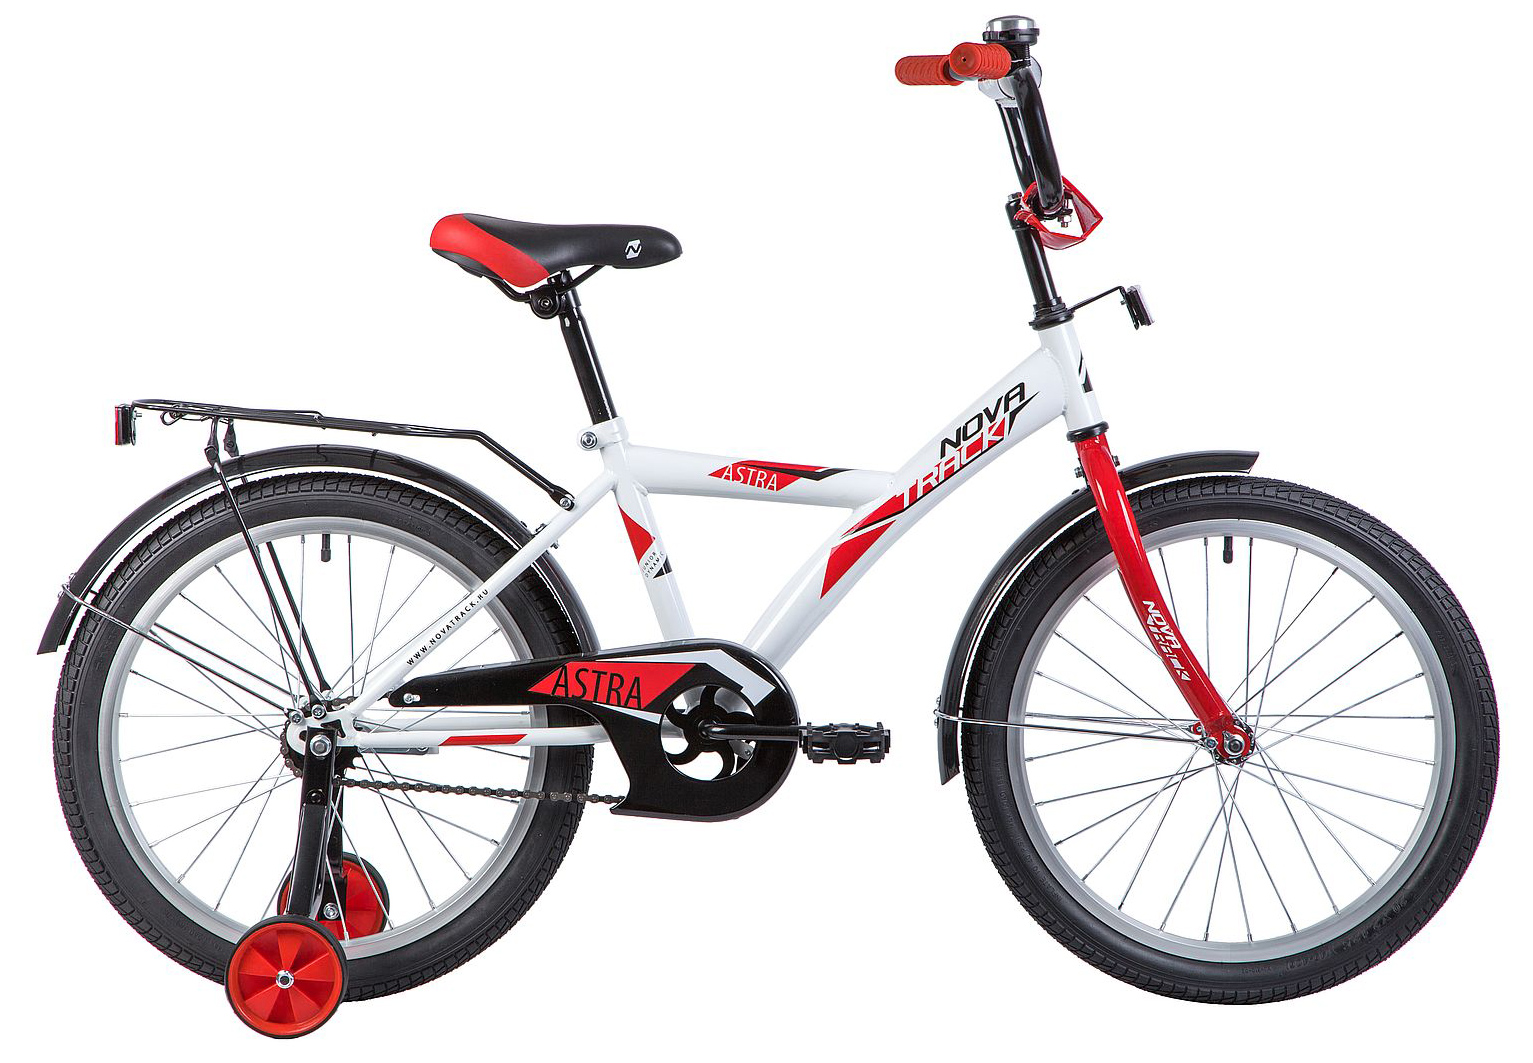  Отзывы о Детском велосипеде Novatrack Astra 20 2019